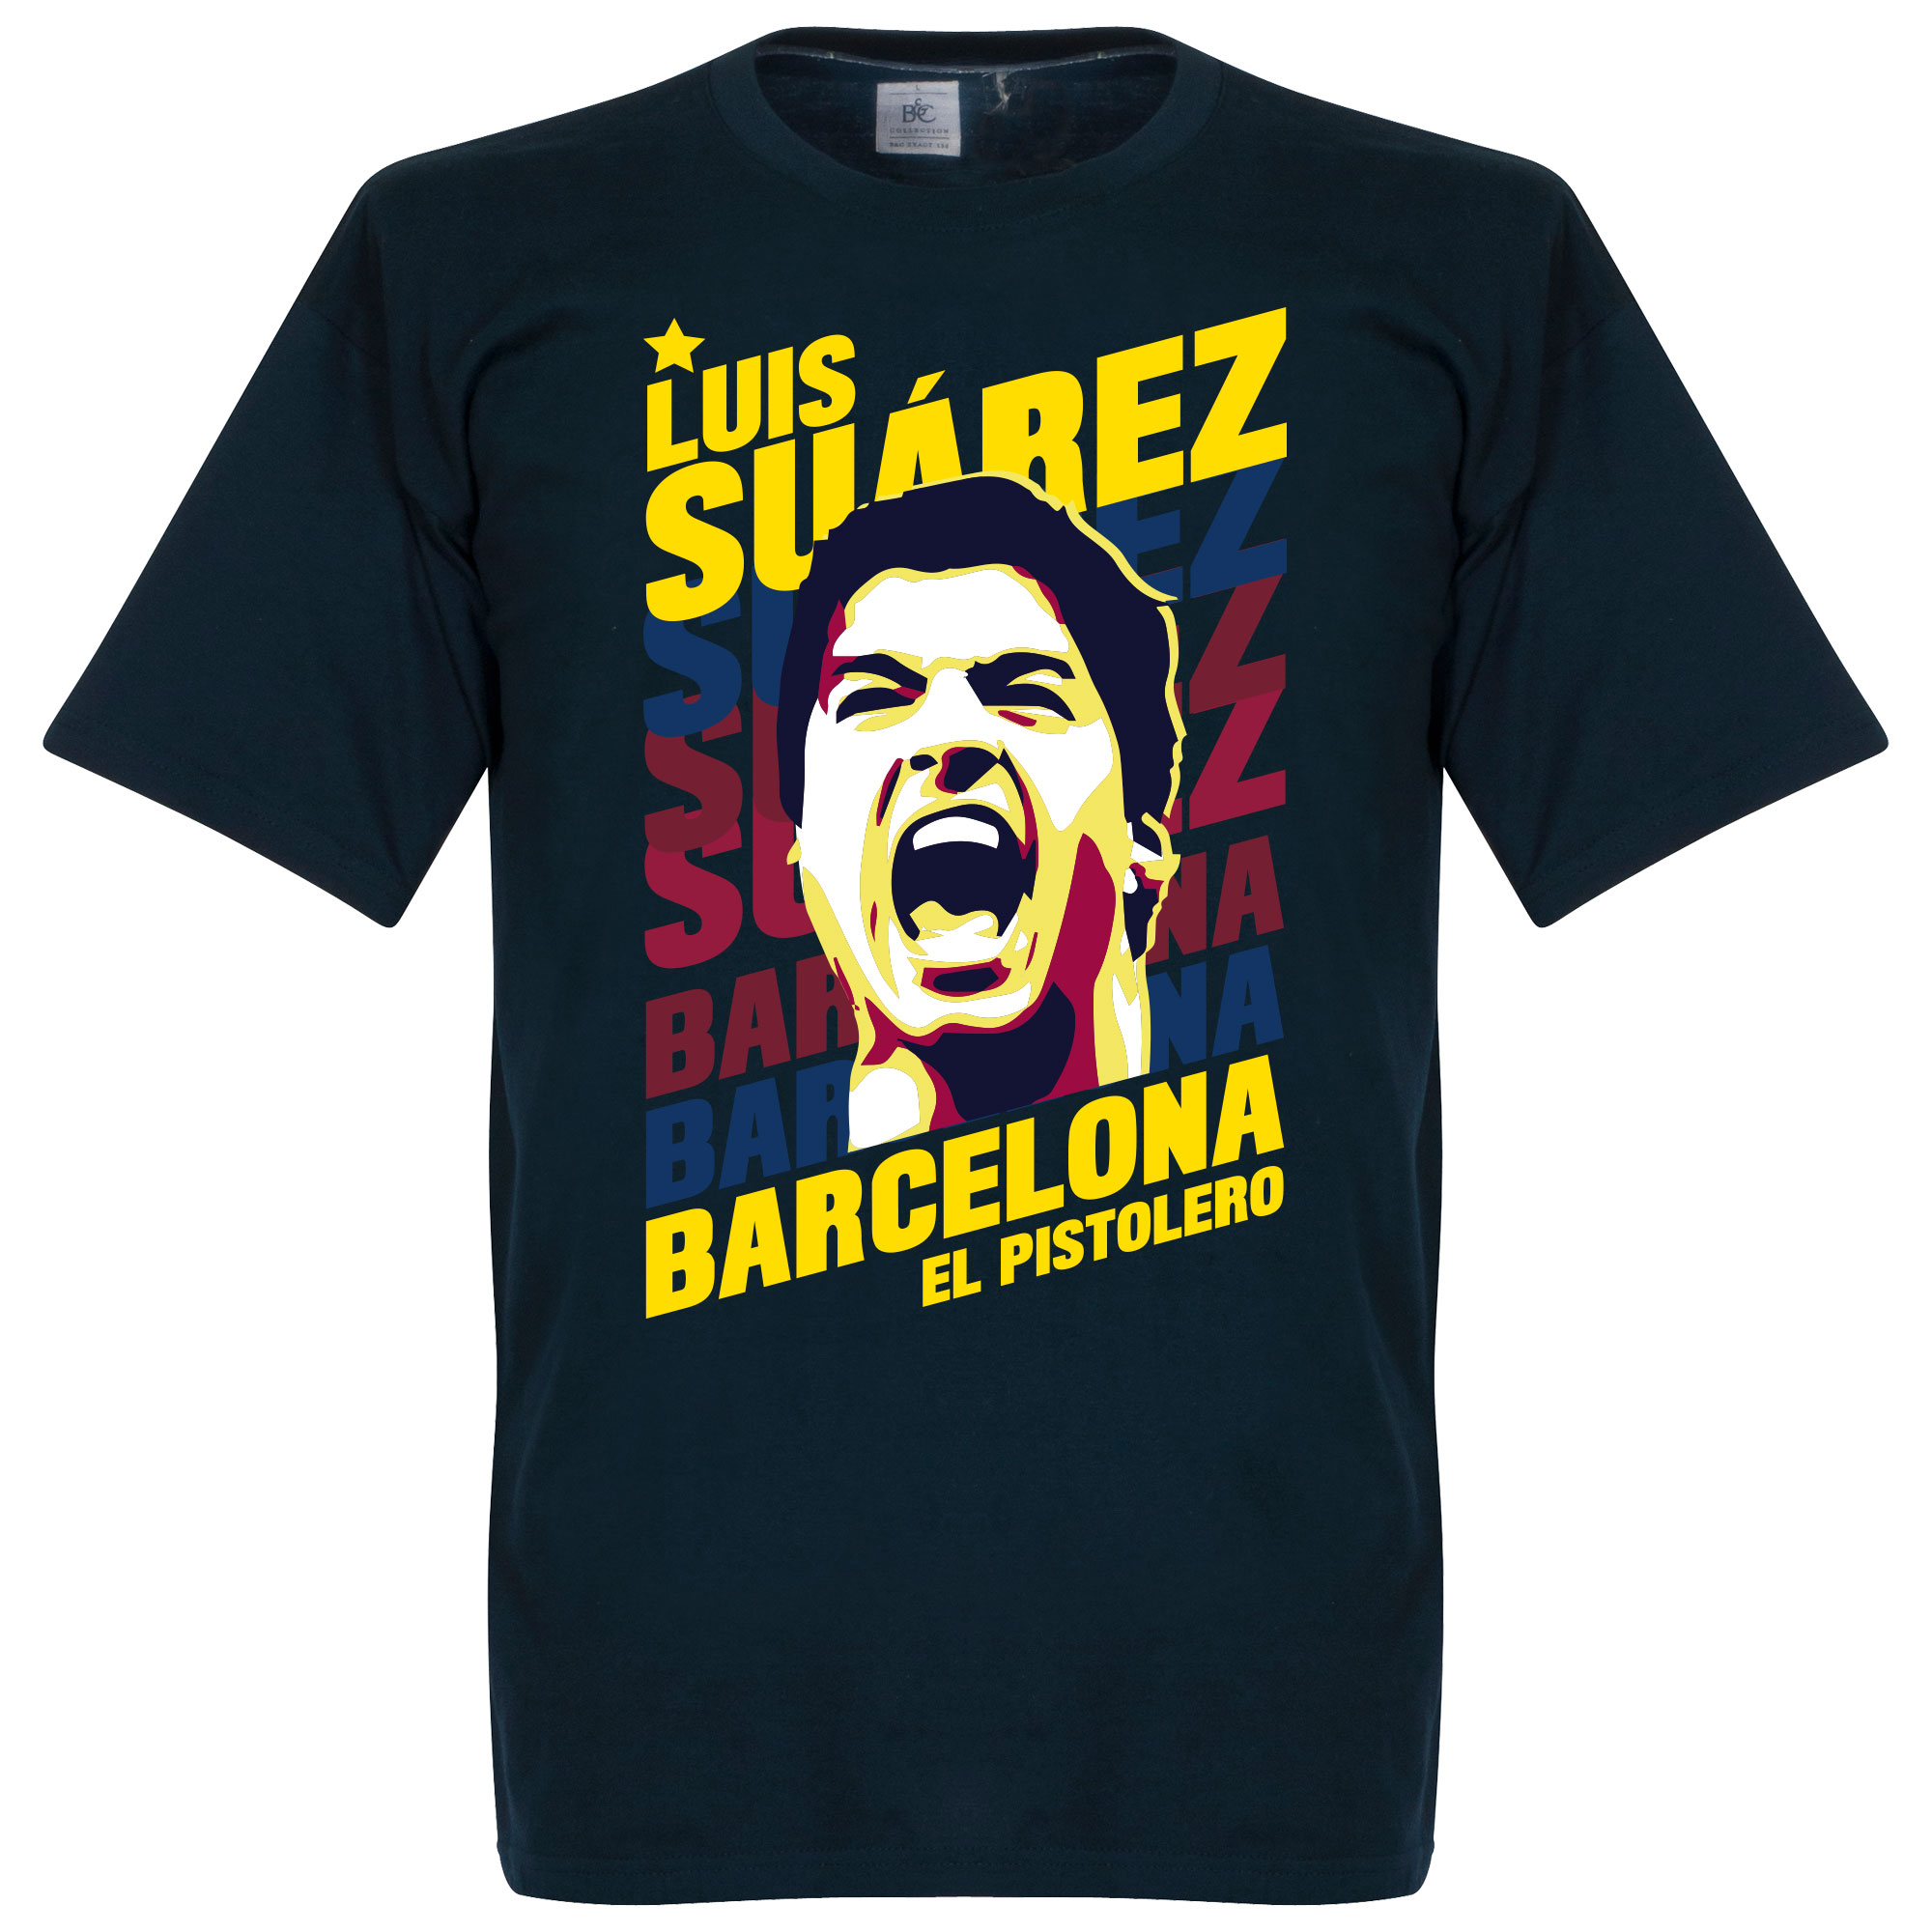 Luis Suarez Barcelona Portrait T-Shirt S